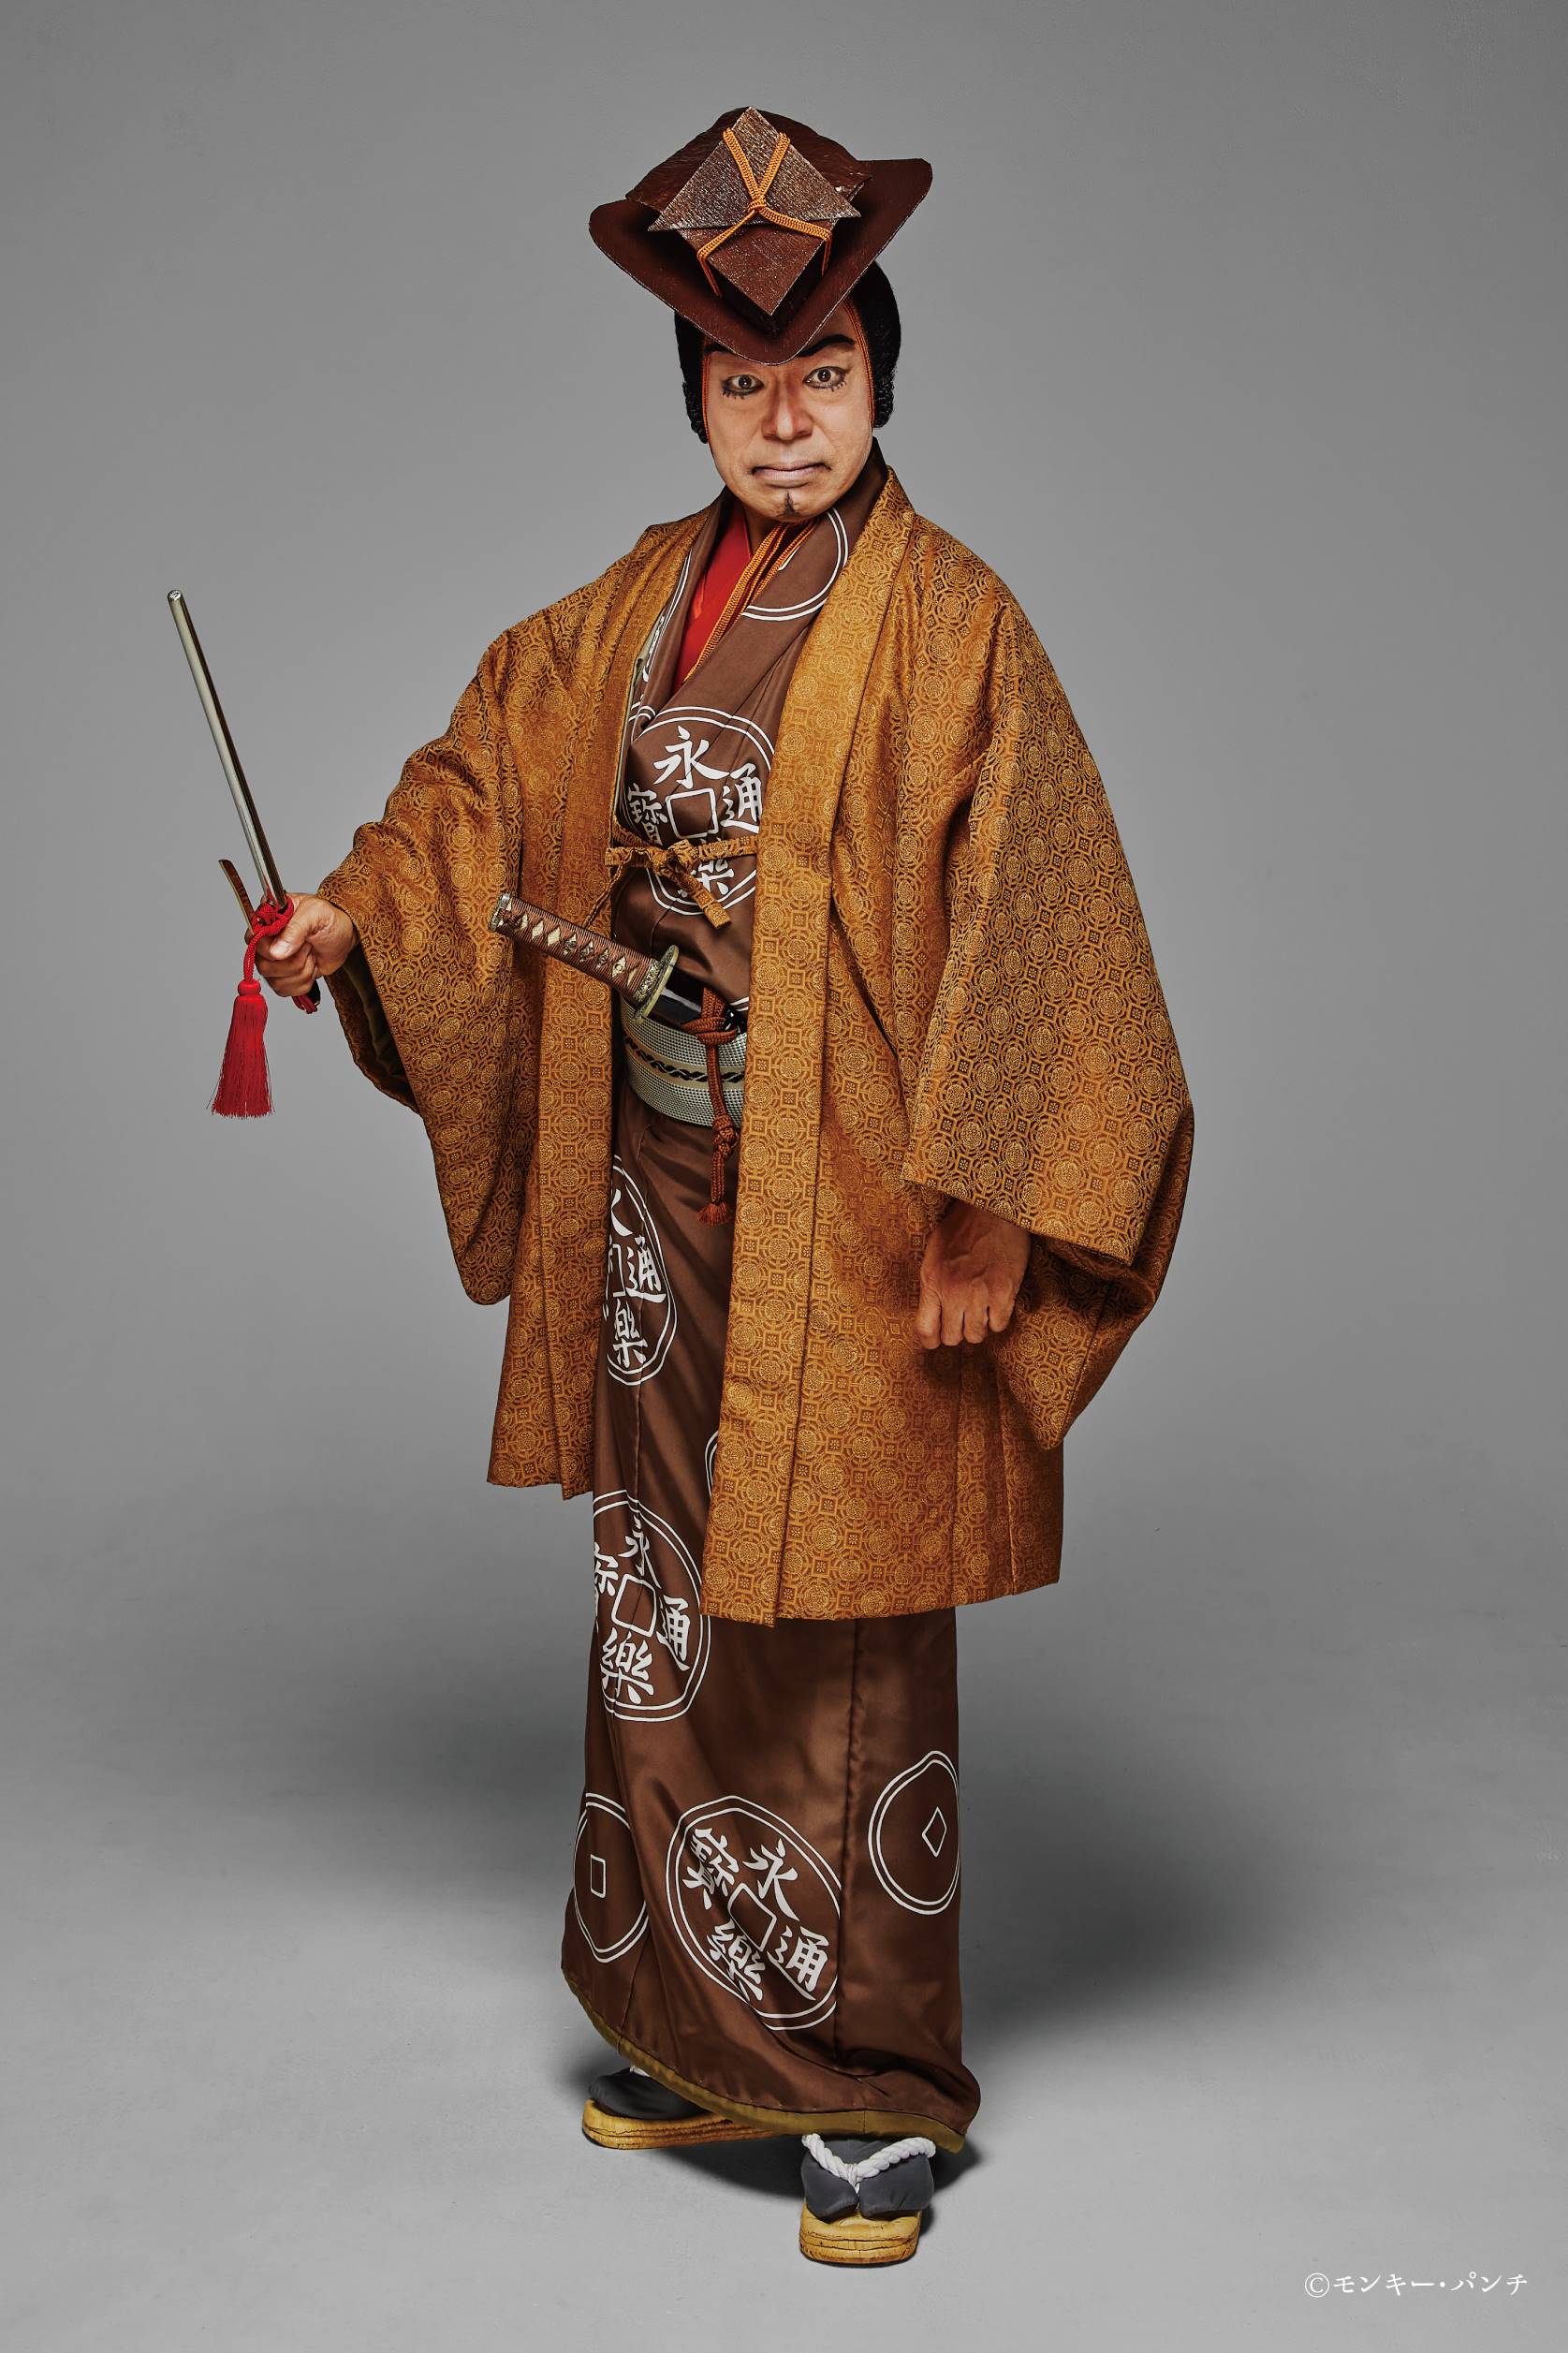 ルパン三世」が新作歌舞伎に 片岡愛之助主演、銭形役は市川中車 - 産経